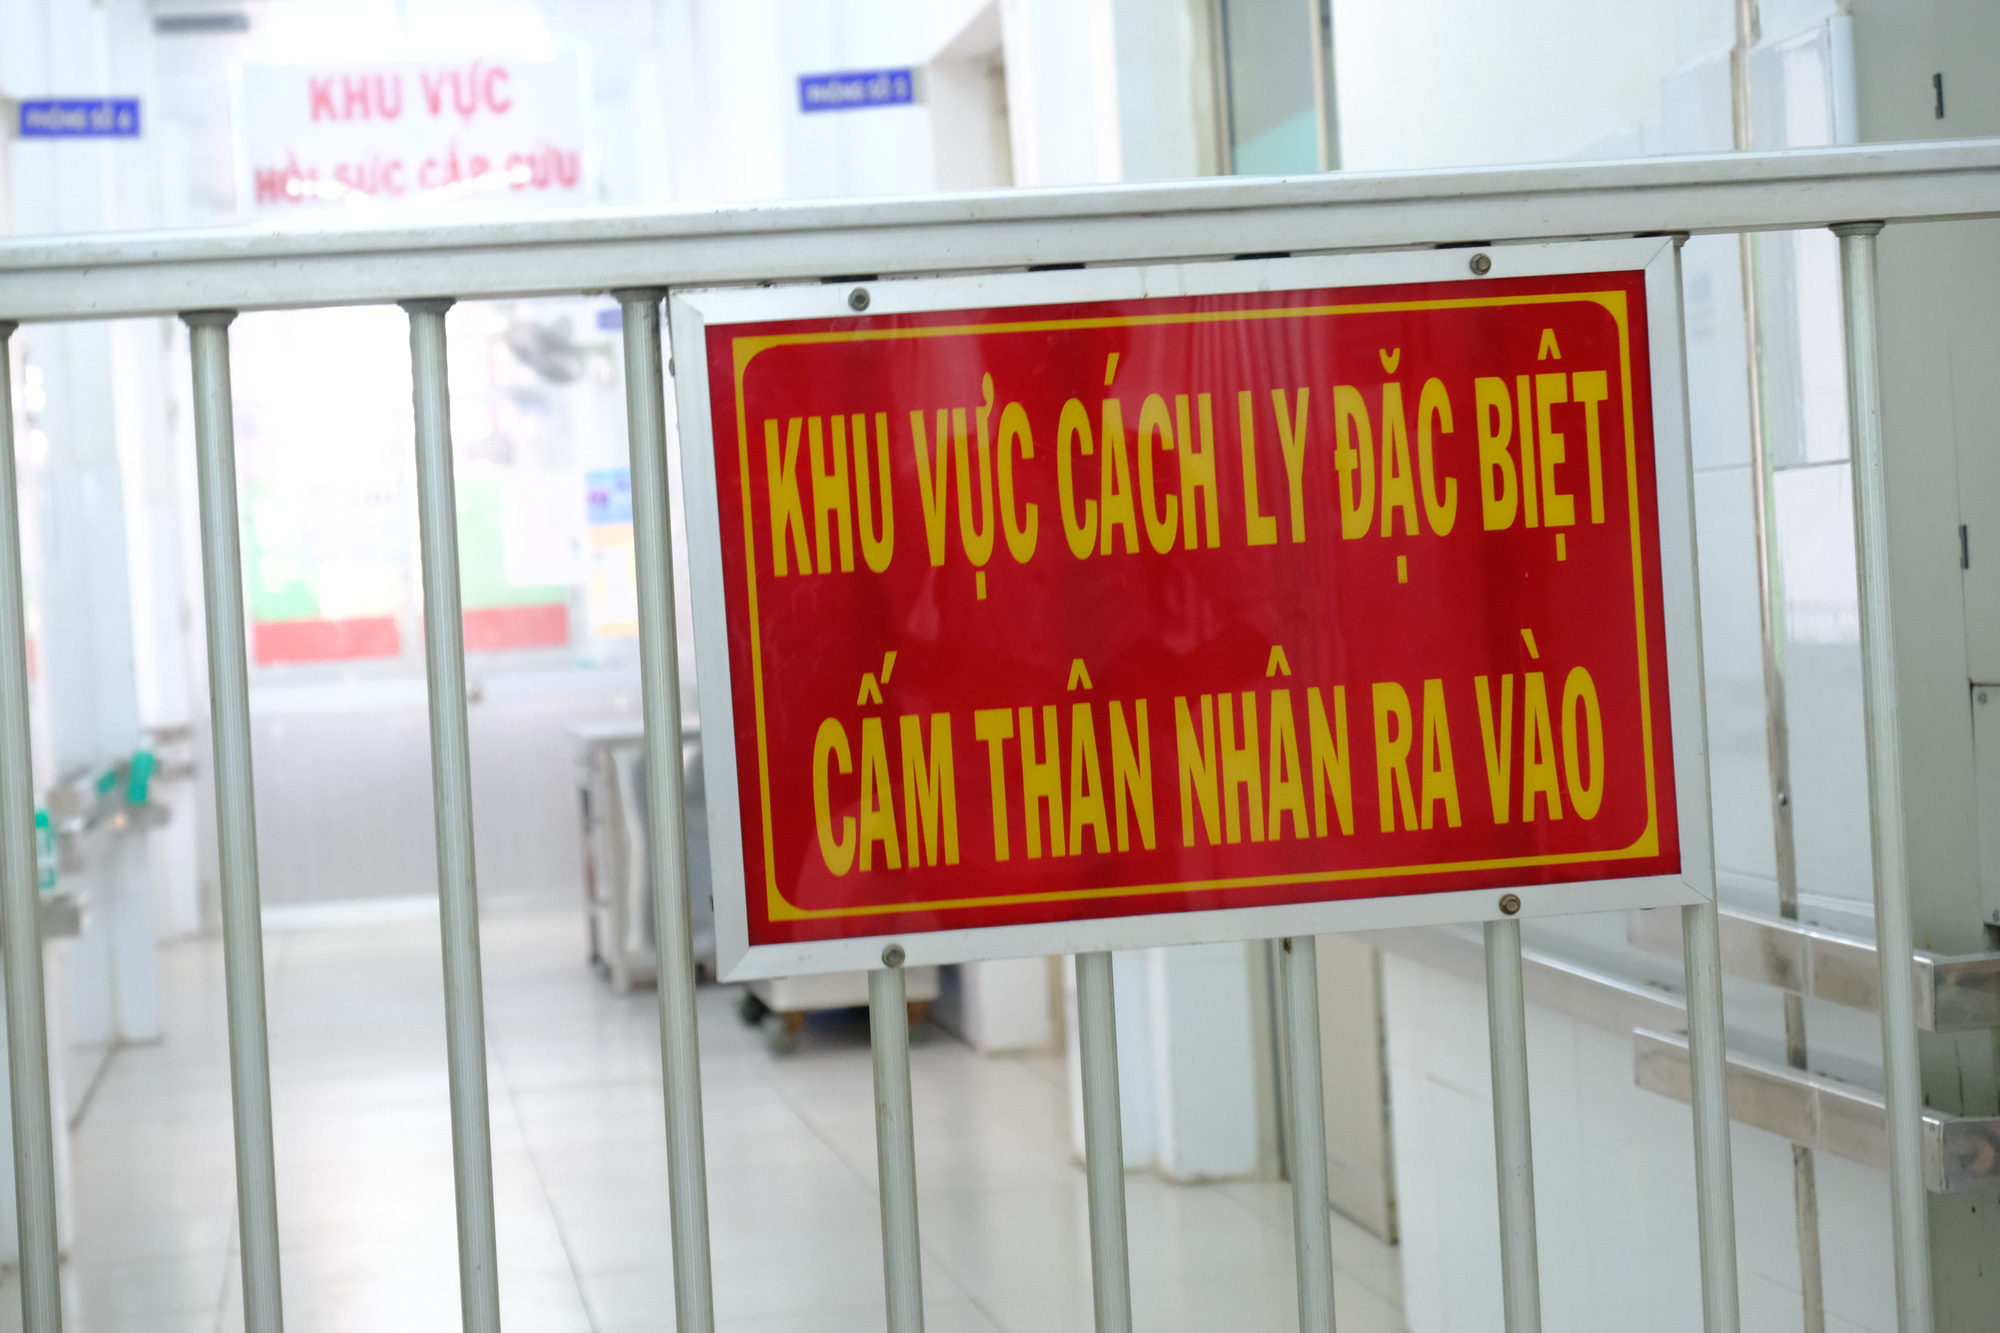 Gia đình nghệ sĩ Lý Huỳnh, Lý Hùng tặng Bệnh viện Chợ Rẫy máy thở 500 triệu đồng để phòng chống Covid-19 - Ảnh 3.